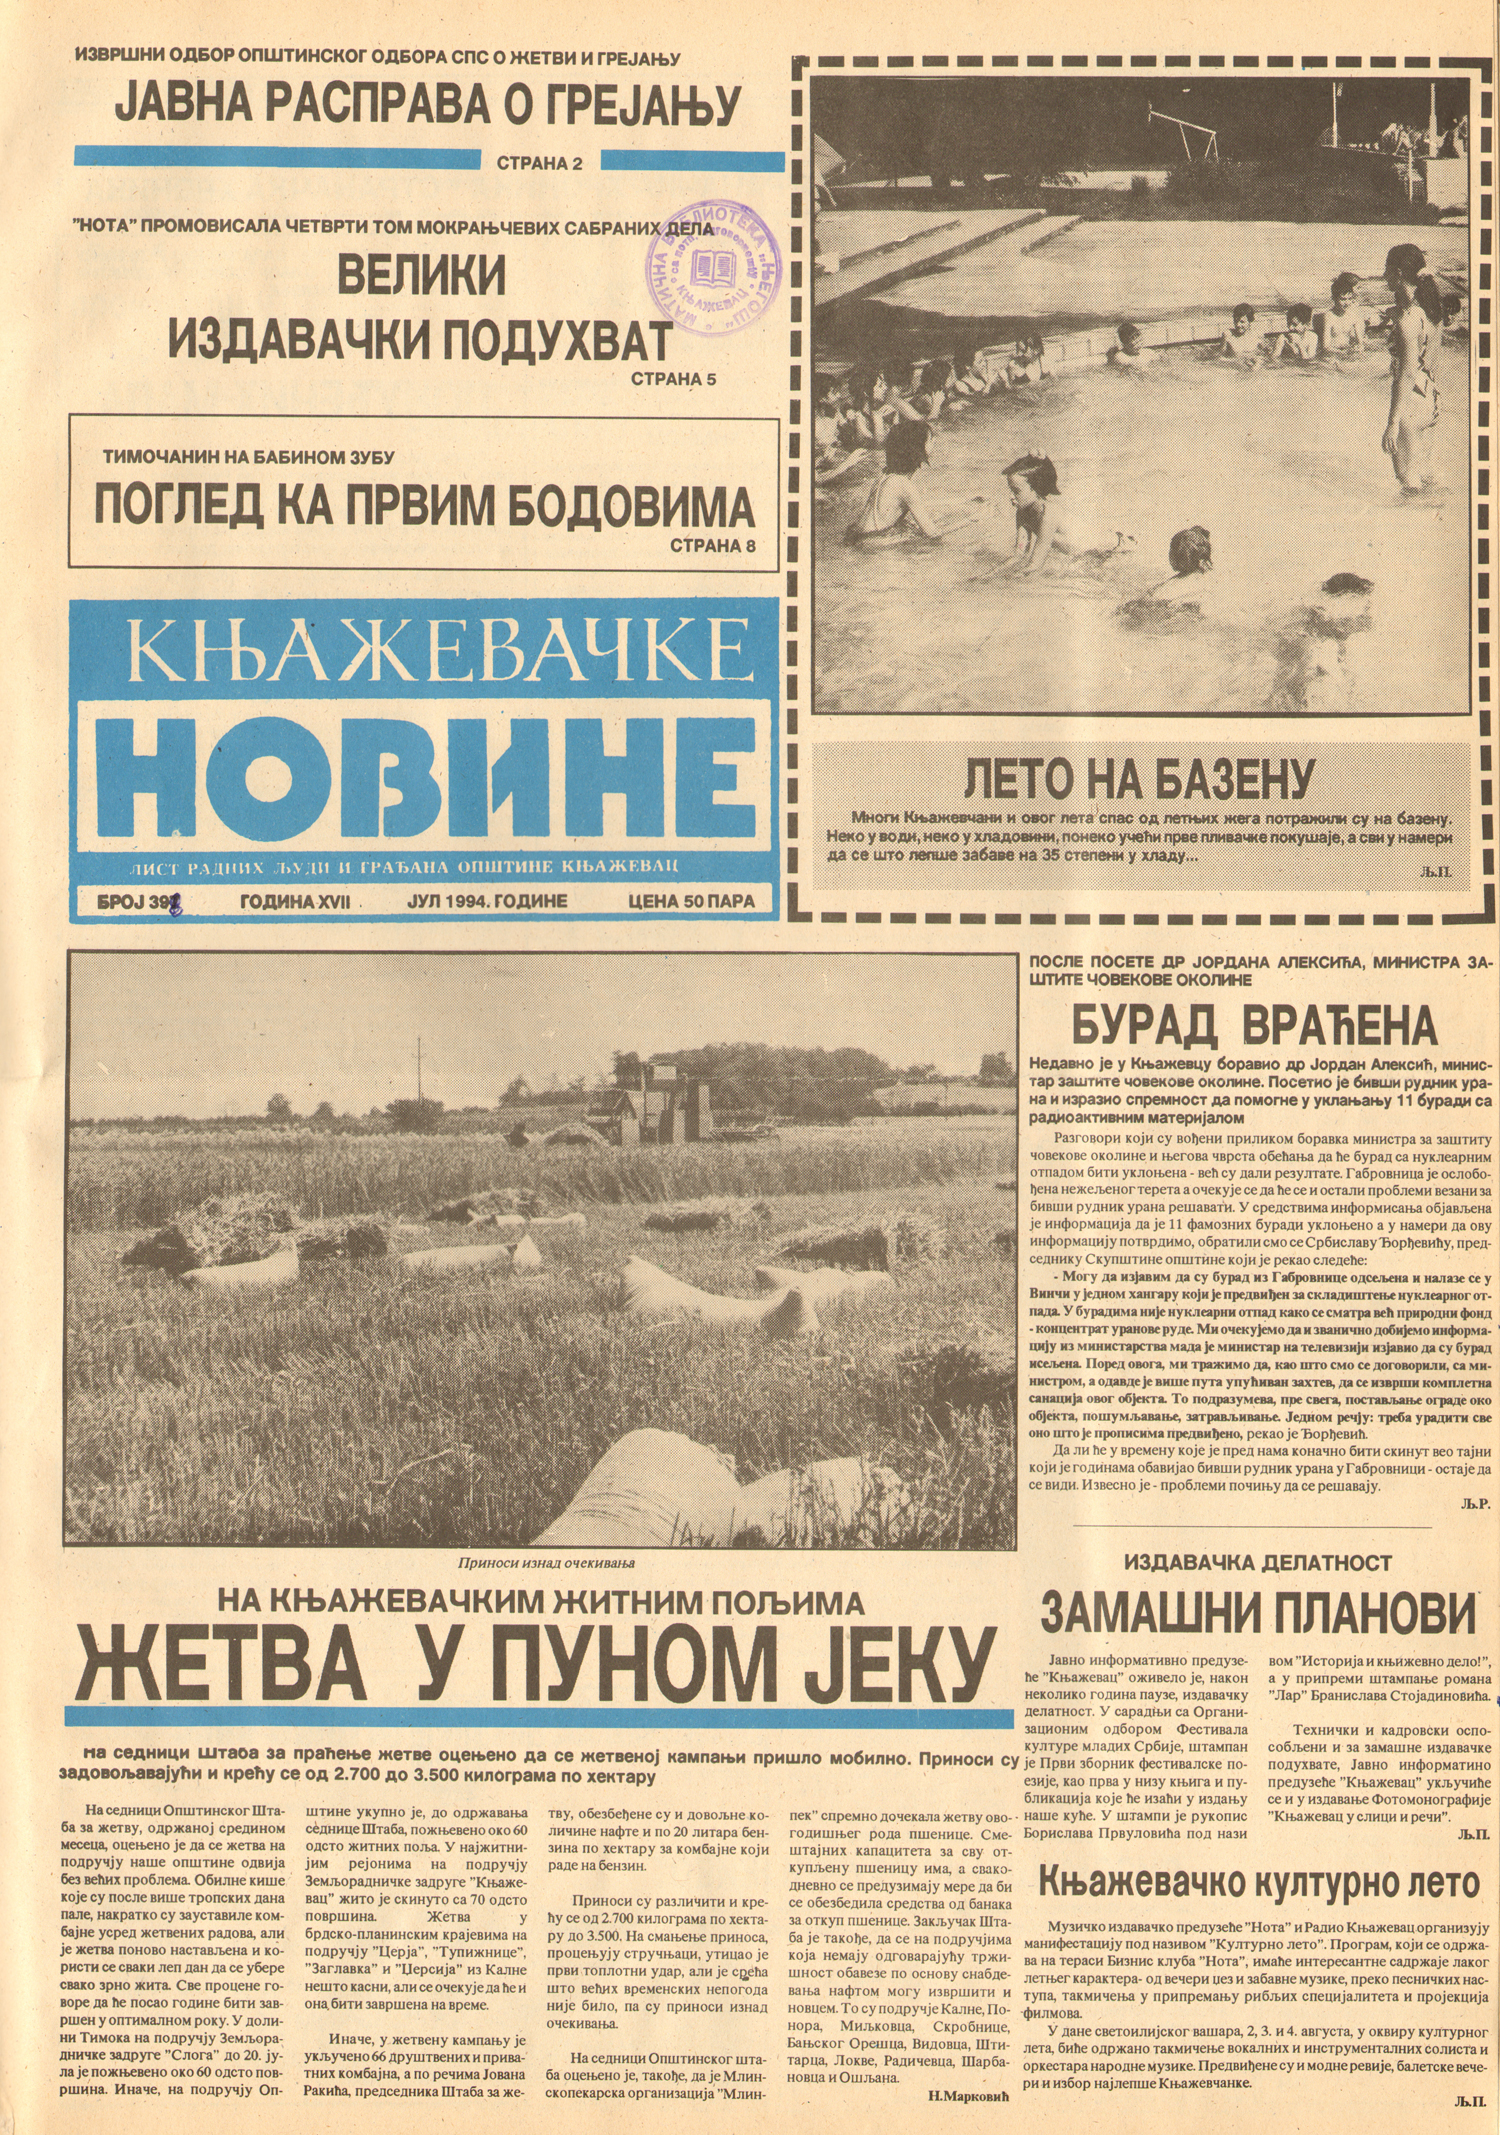 Књажевачке новине, број 398, година 1994